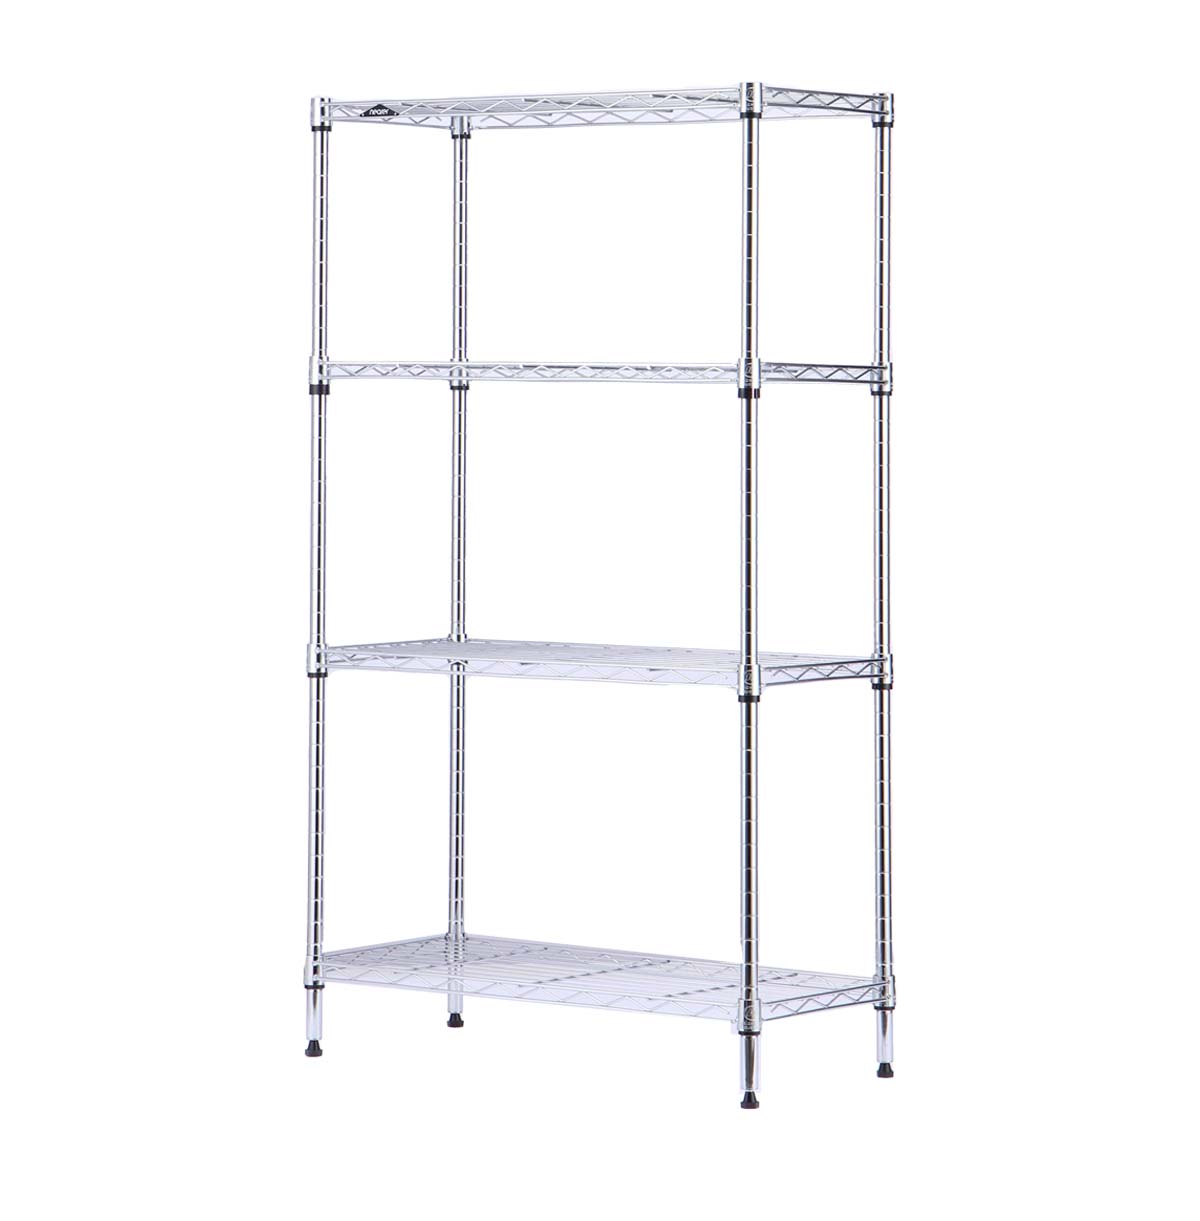 4-shelf wire storage rack supplier